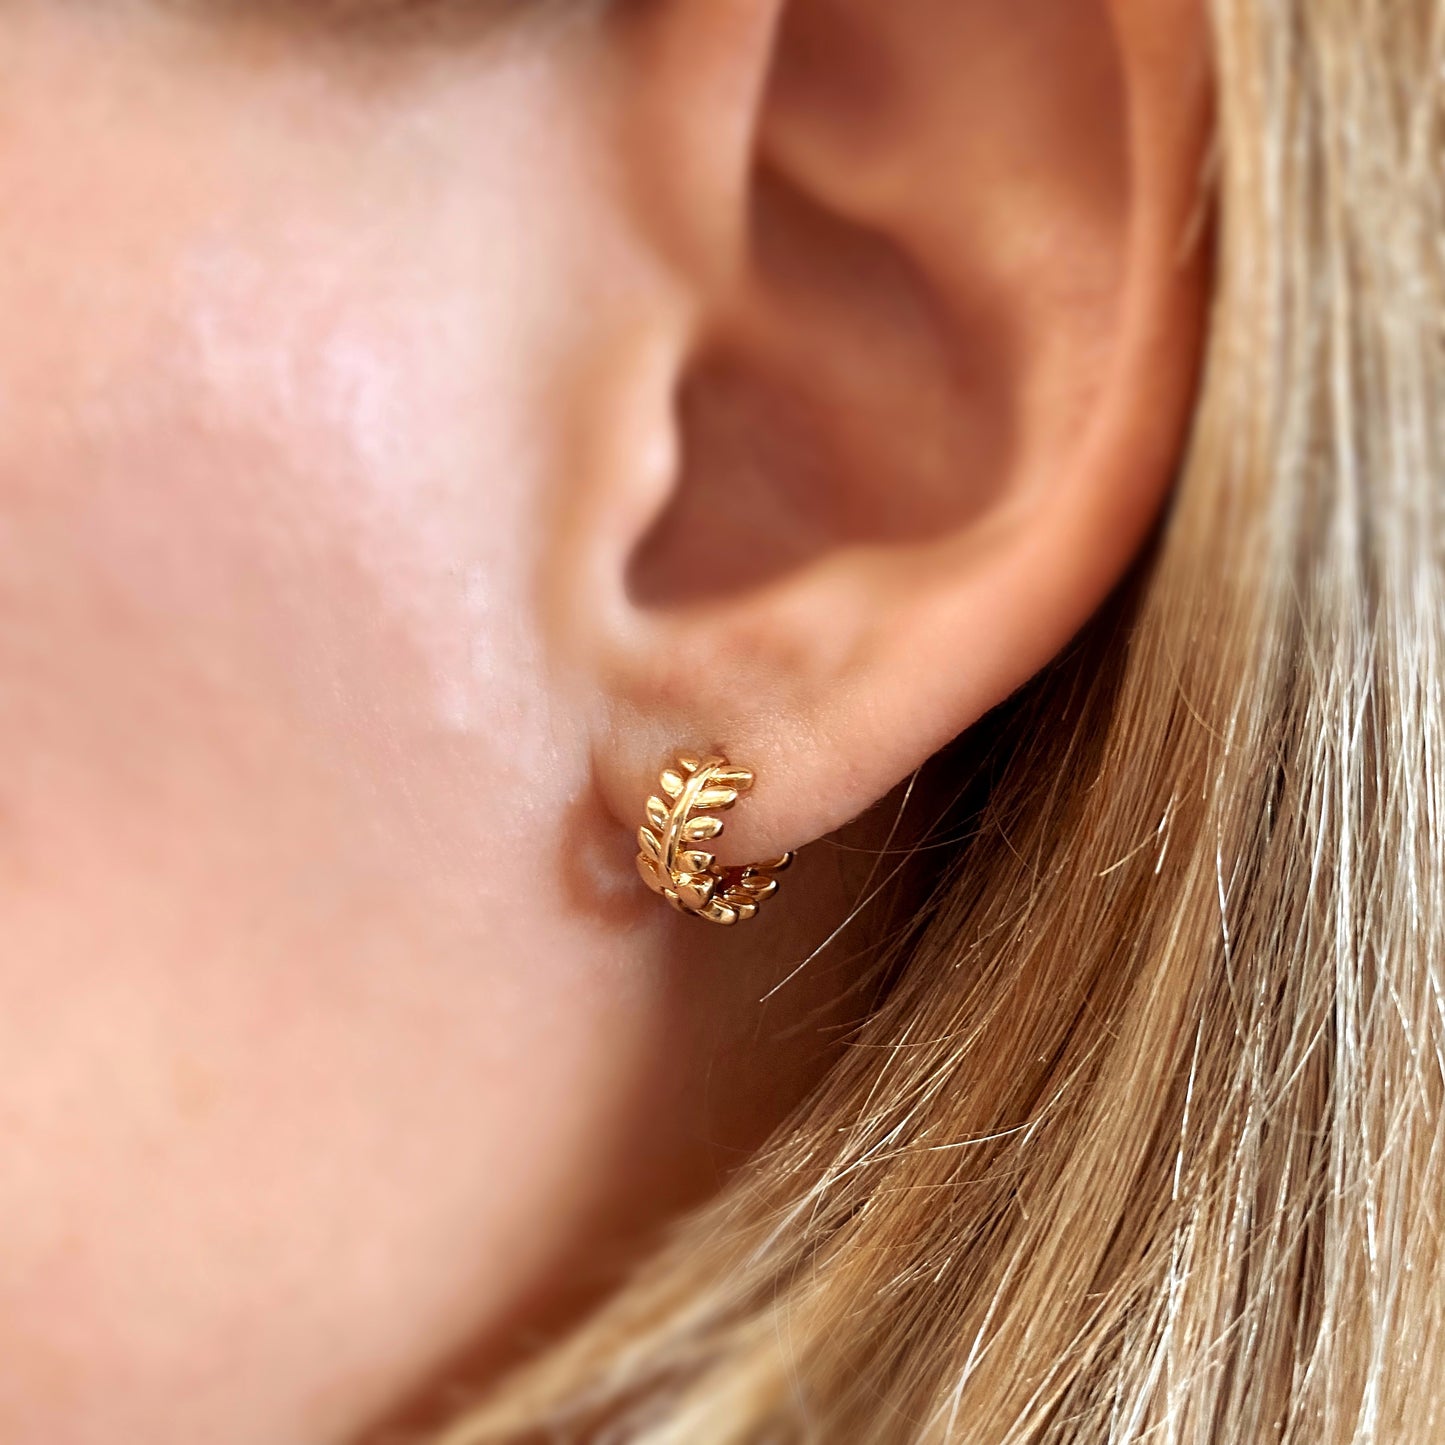 GoldFi 18k Gold Filled Leaf Clicker Hoop Earrings